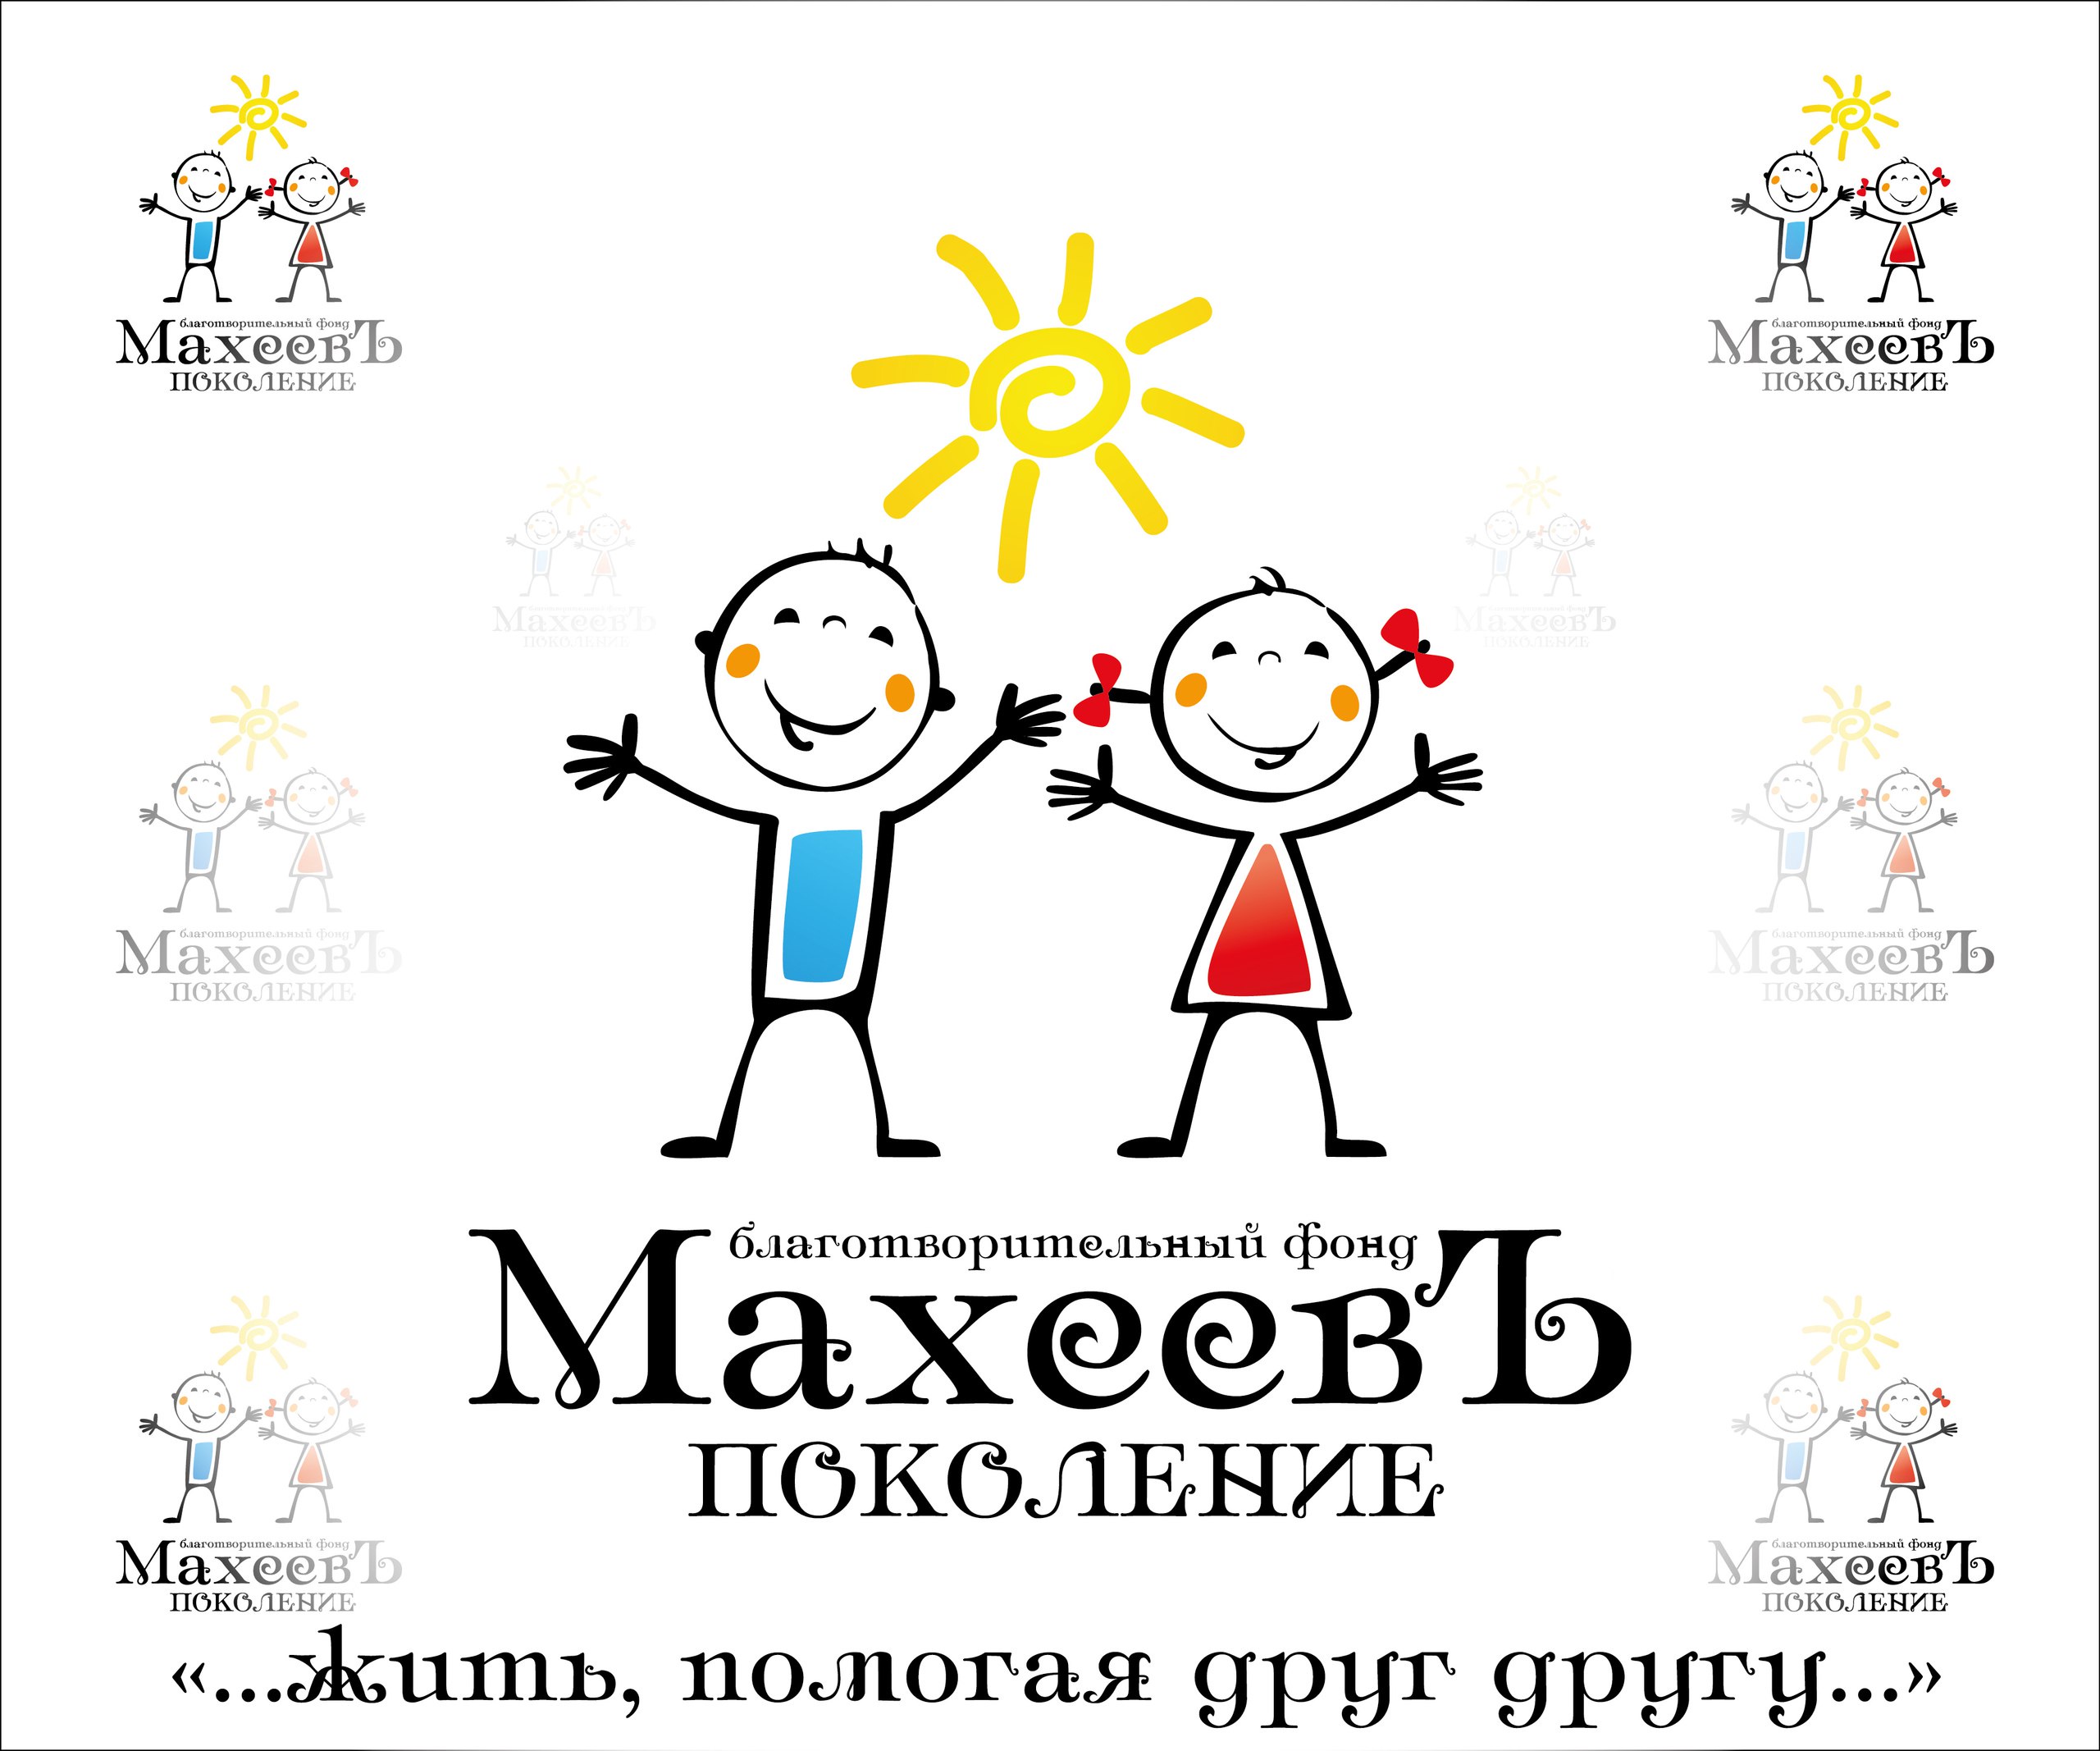 фото: Благотворительный фонд ««Махеевъ» оказал материальную поддержку Елабужской ЦРБ